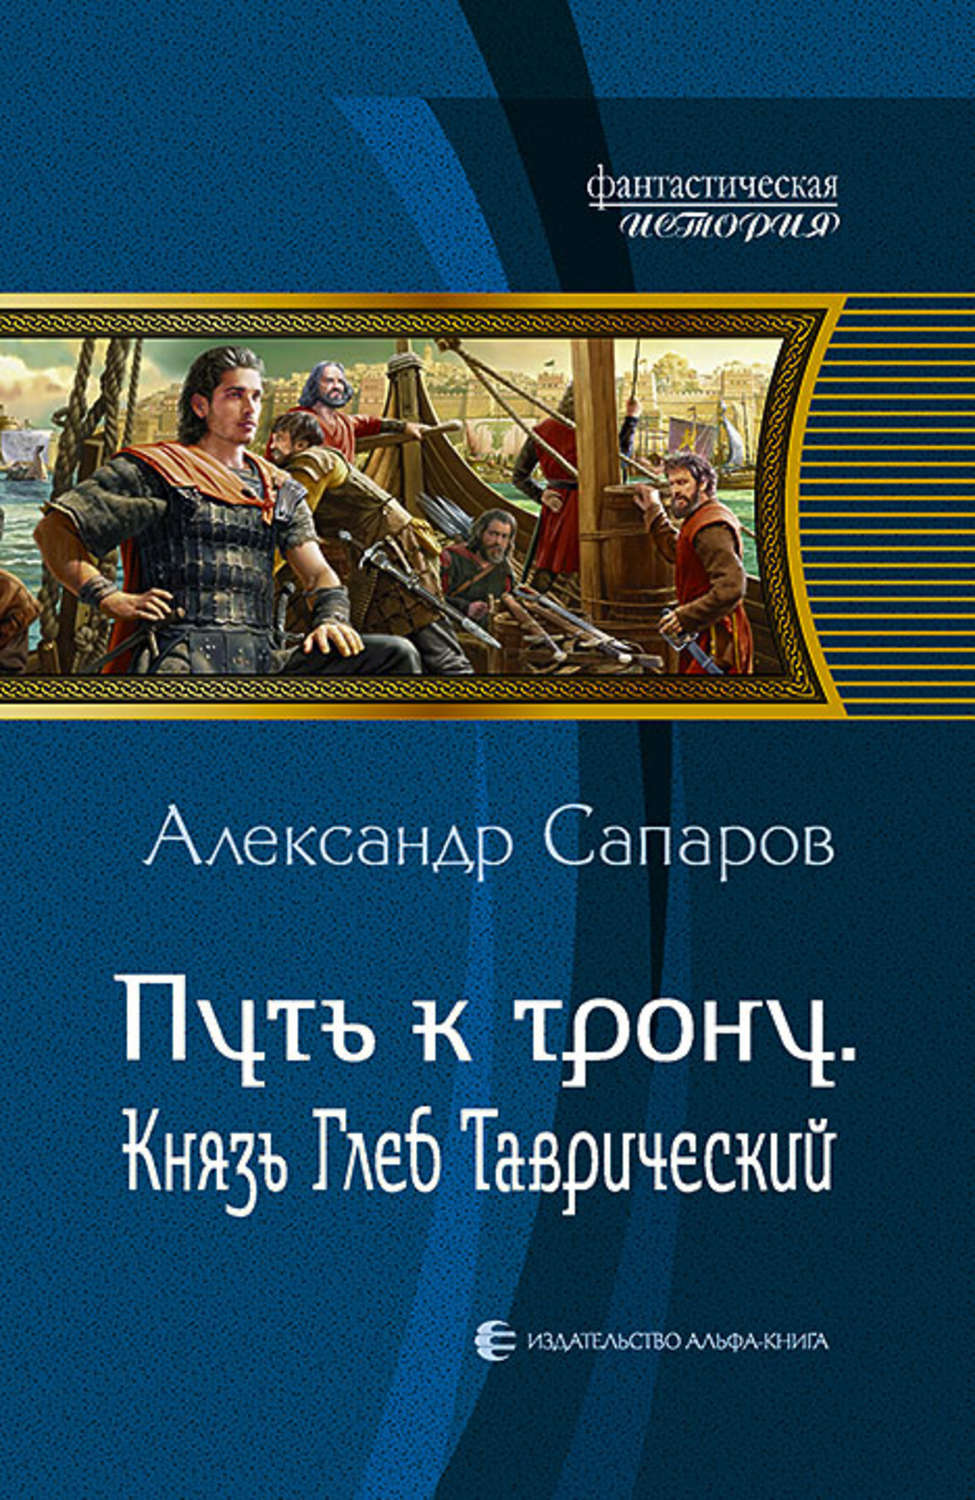 Александр сапаров скачать все книги бесплатно